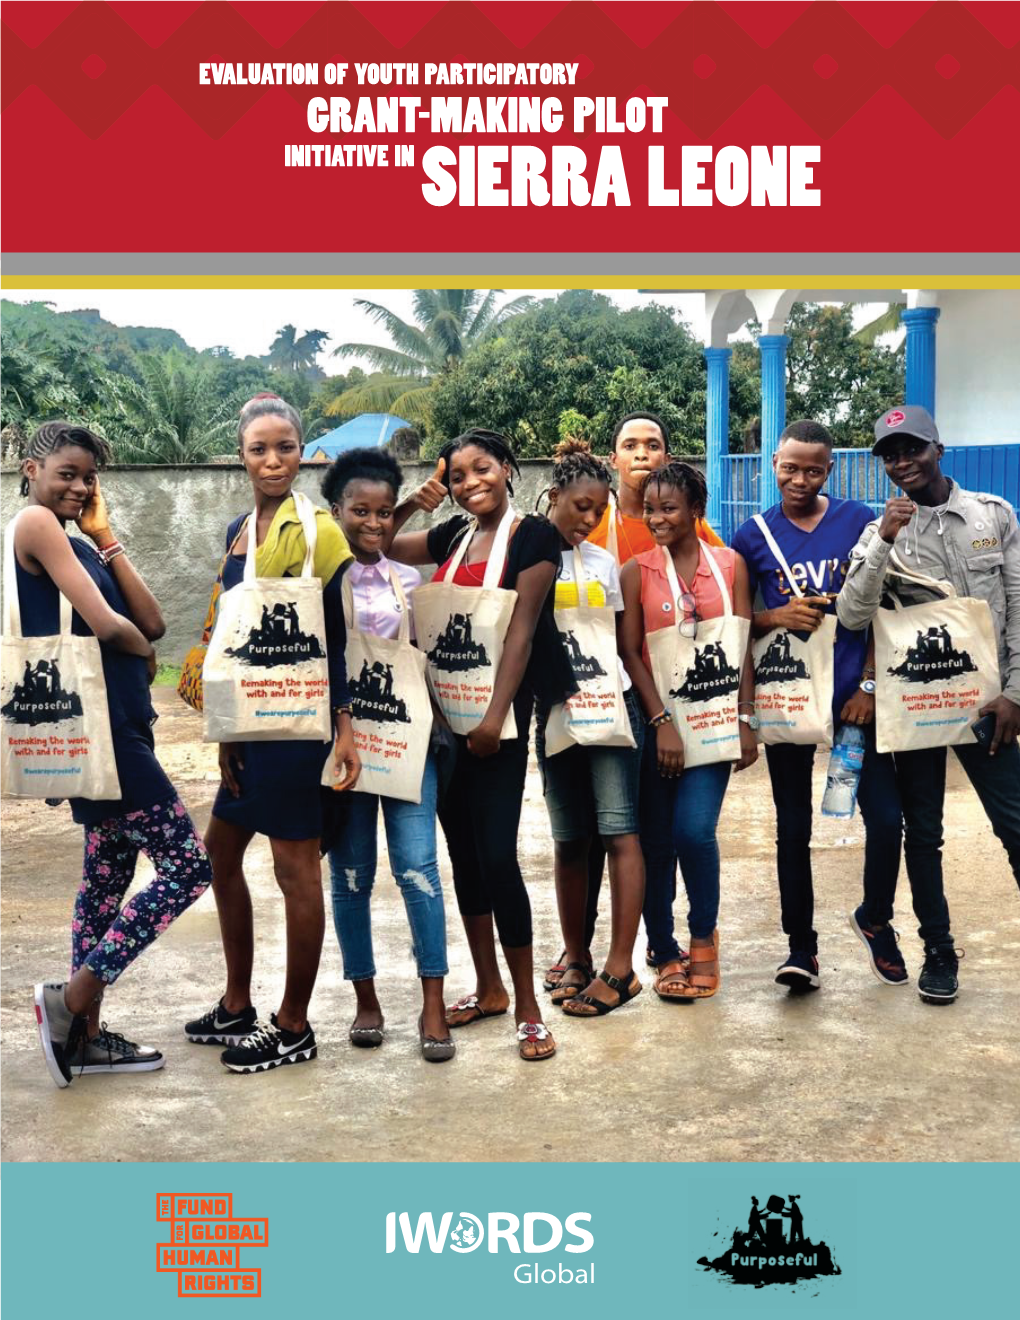 Grant-Making Pilot Initiative in Sierra Leone